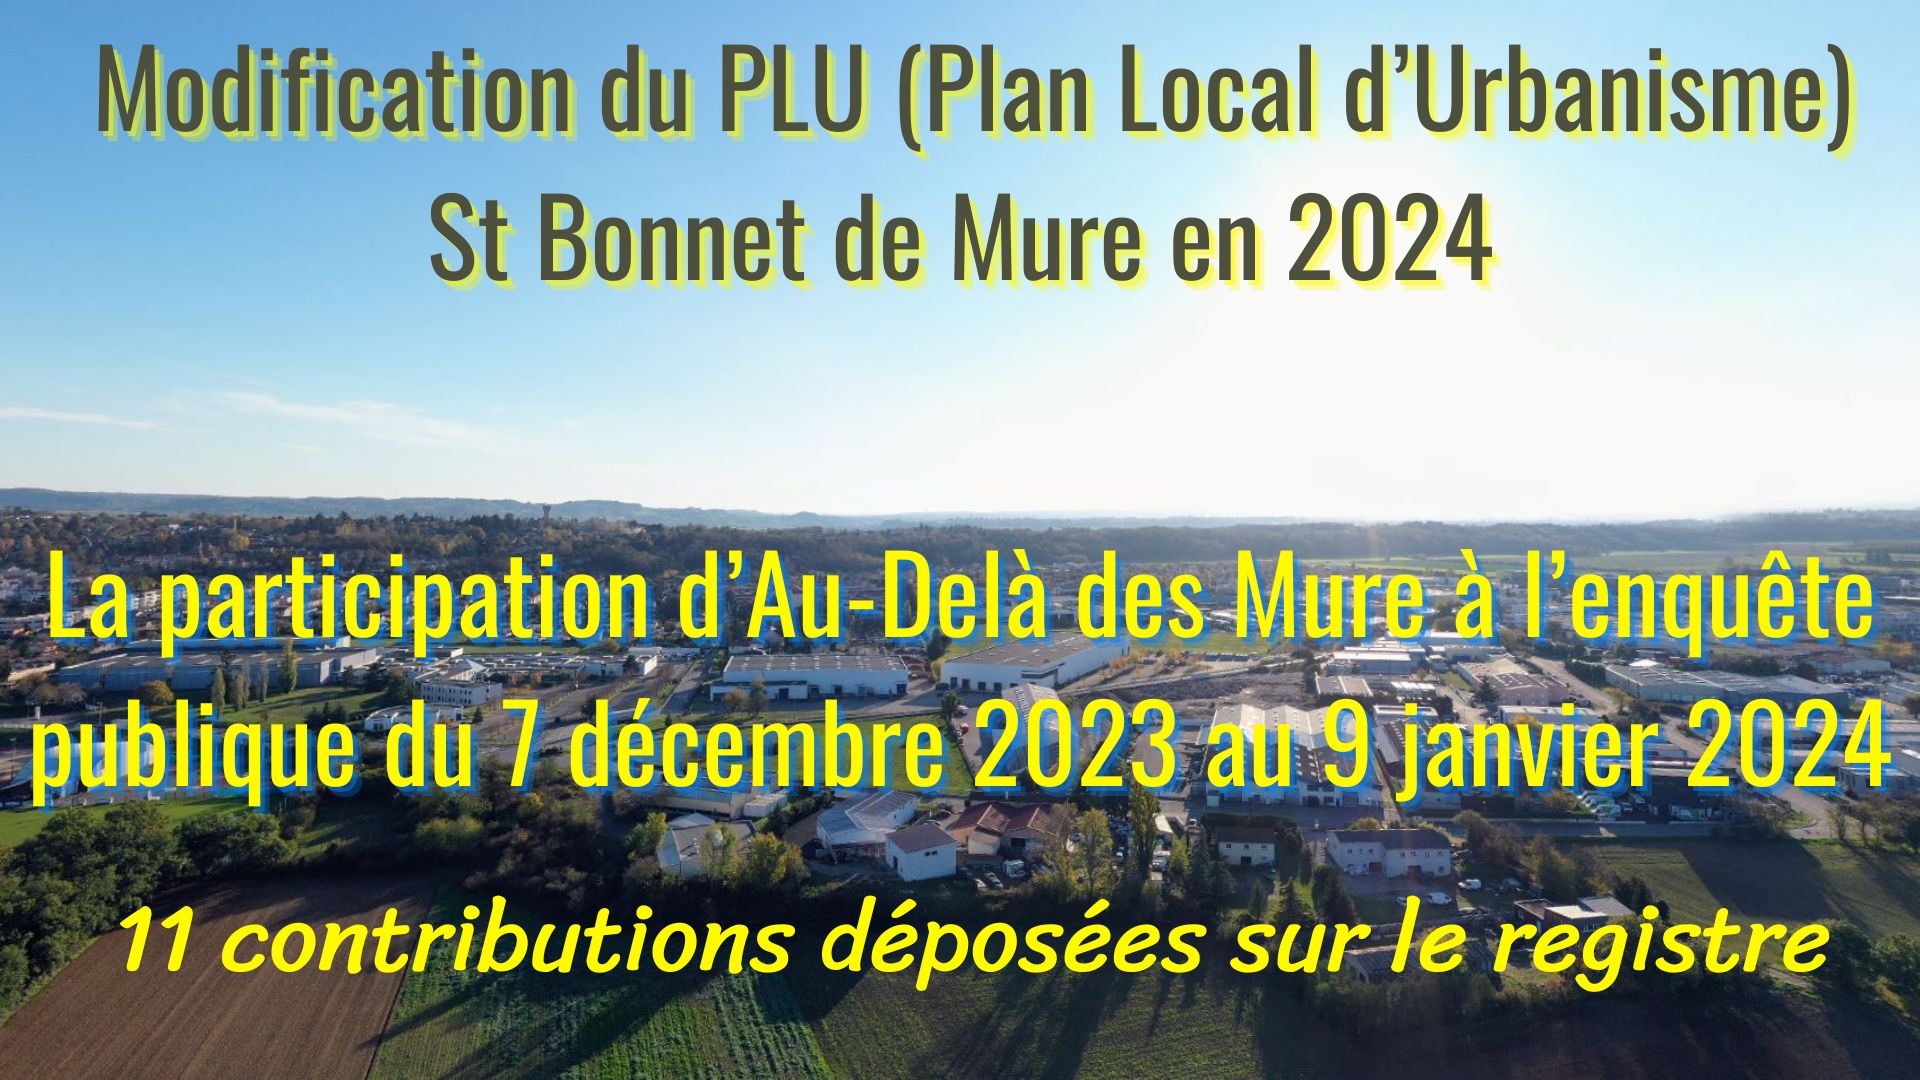 Modification du PLU St Bonnet de Mure en 2024